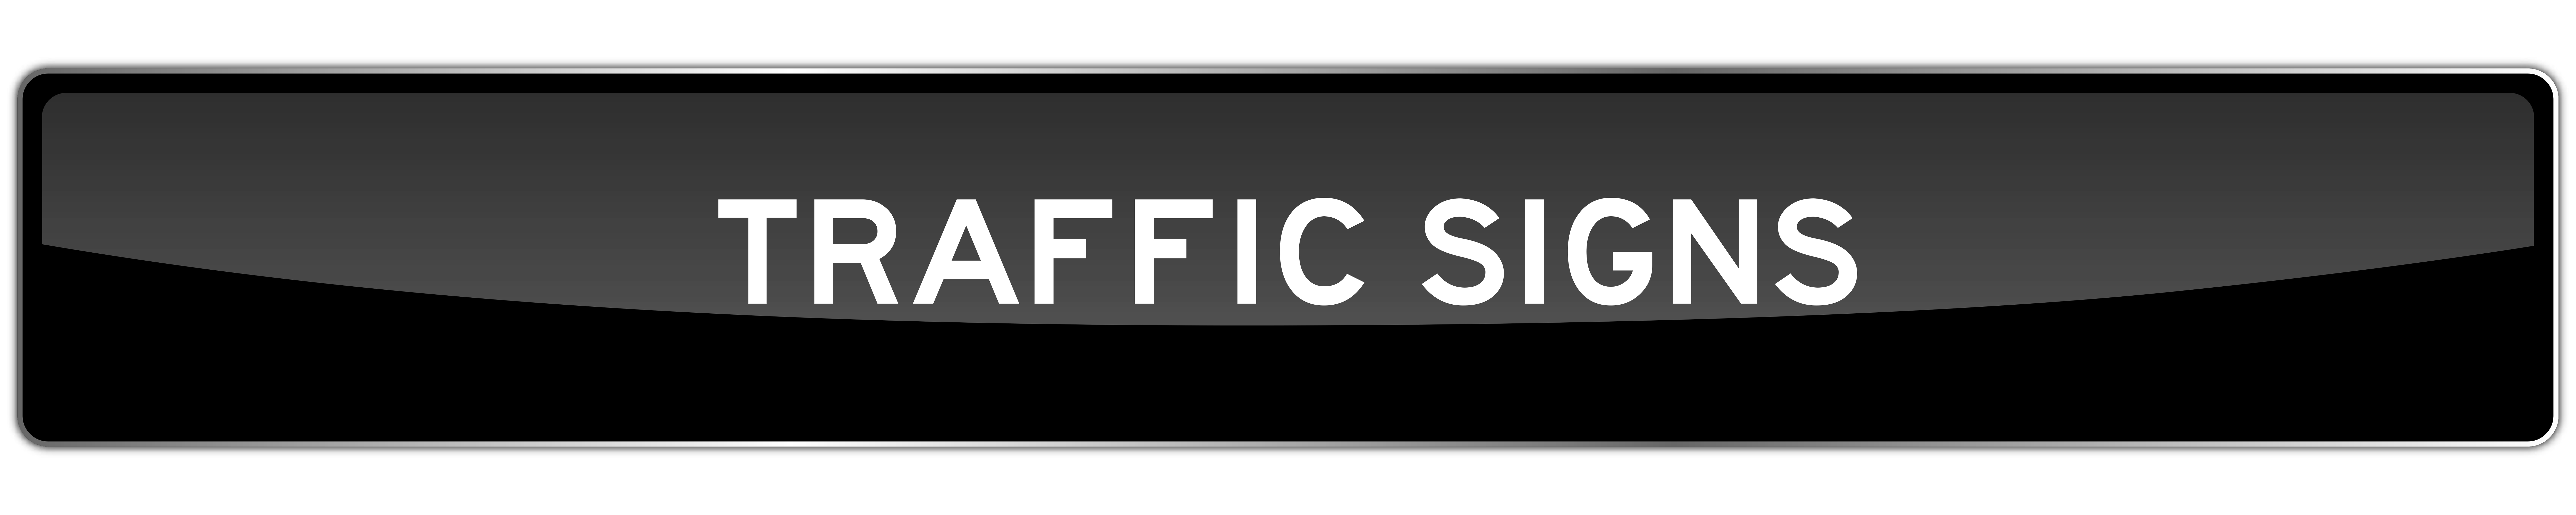 Trafficthingz Com Traffic Signs